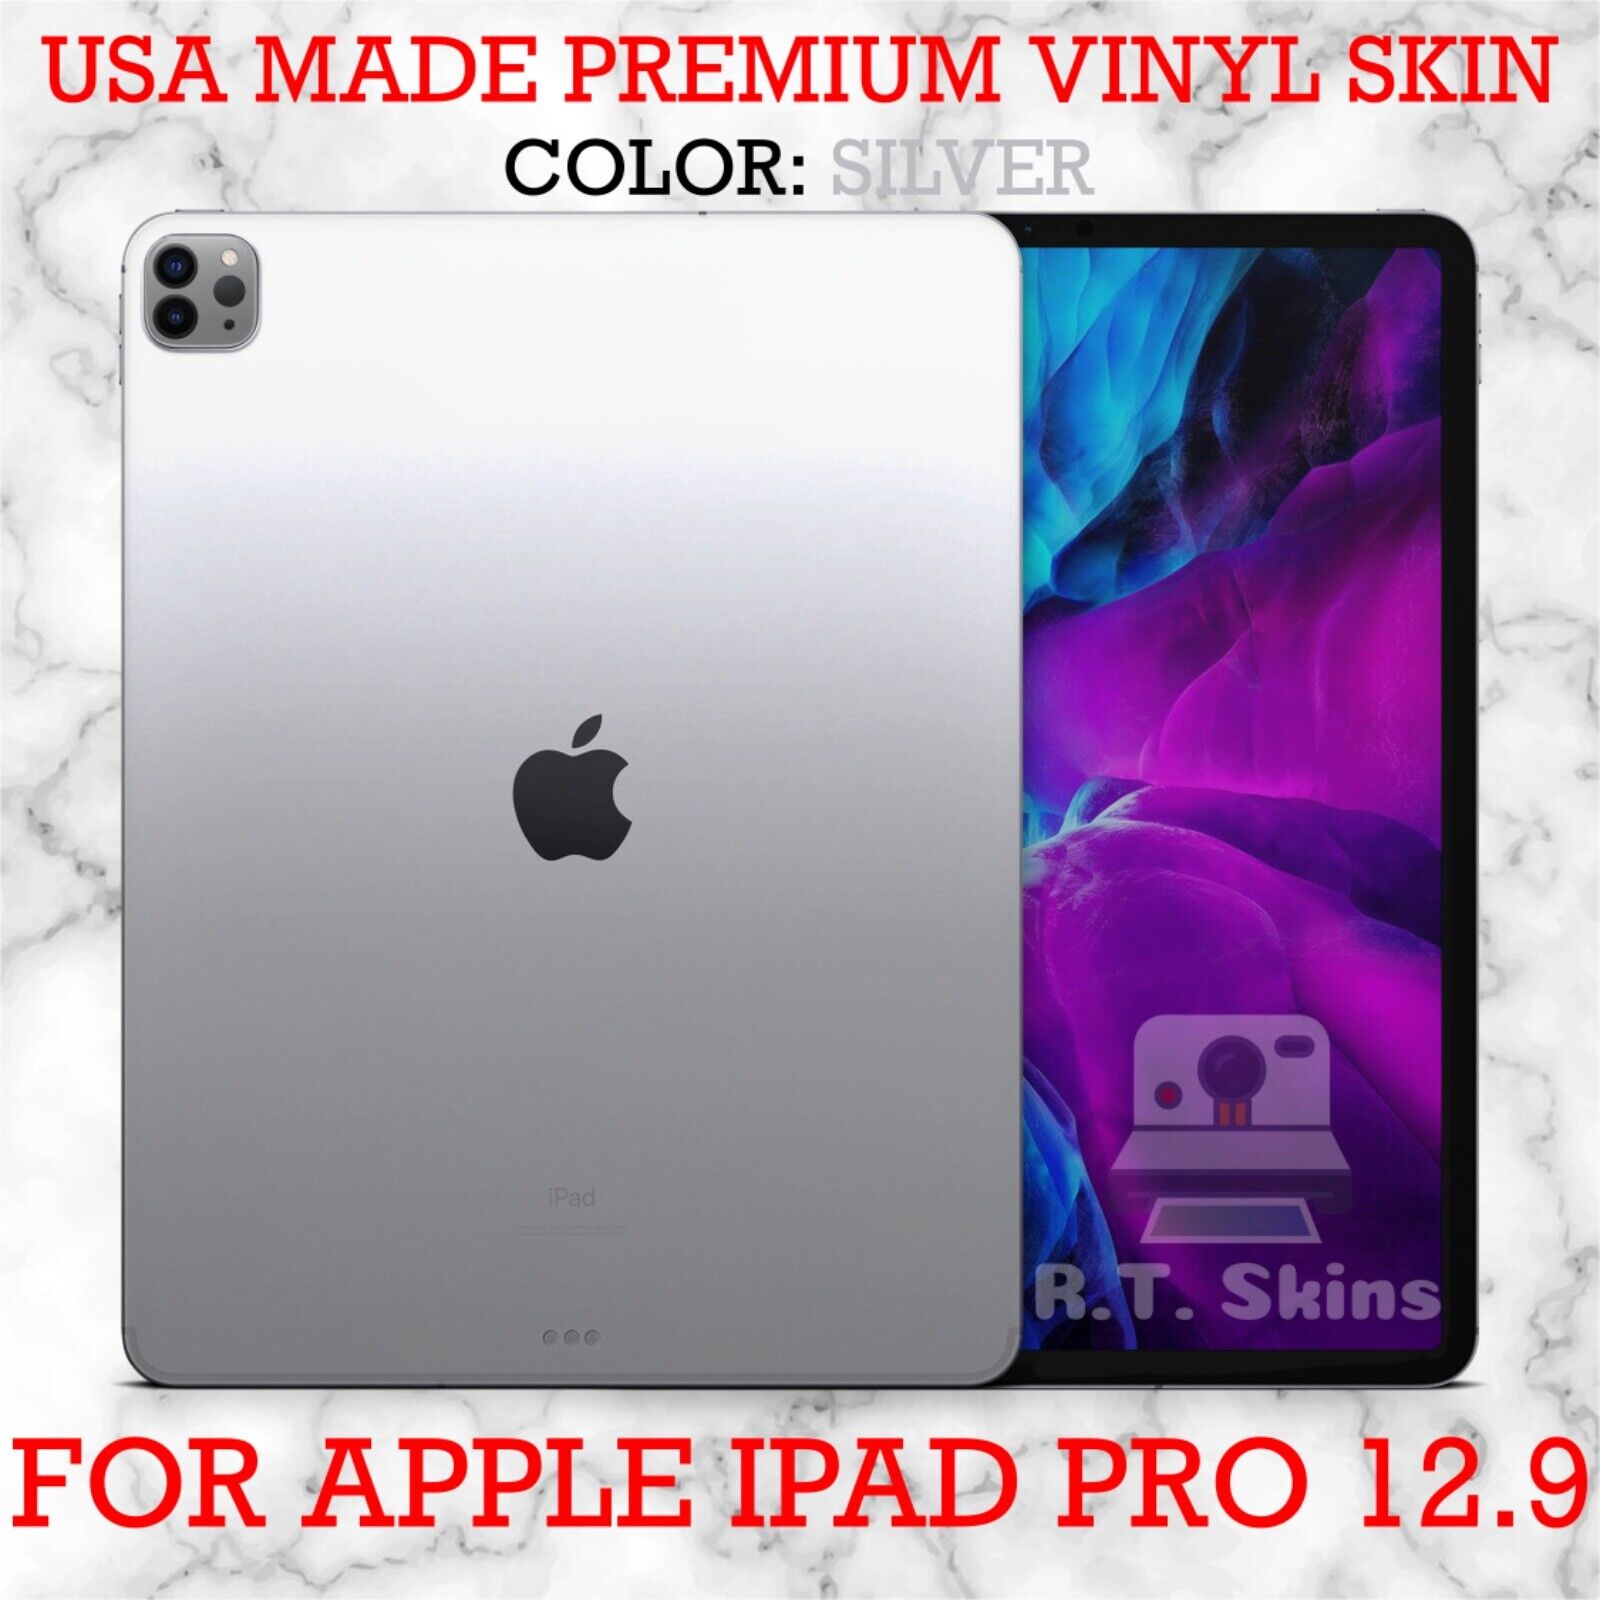 RT.SKINS - Silver - Full Body Vinyl Skin for Apple iPad Pro 12.9 (2020)